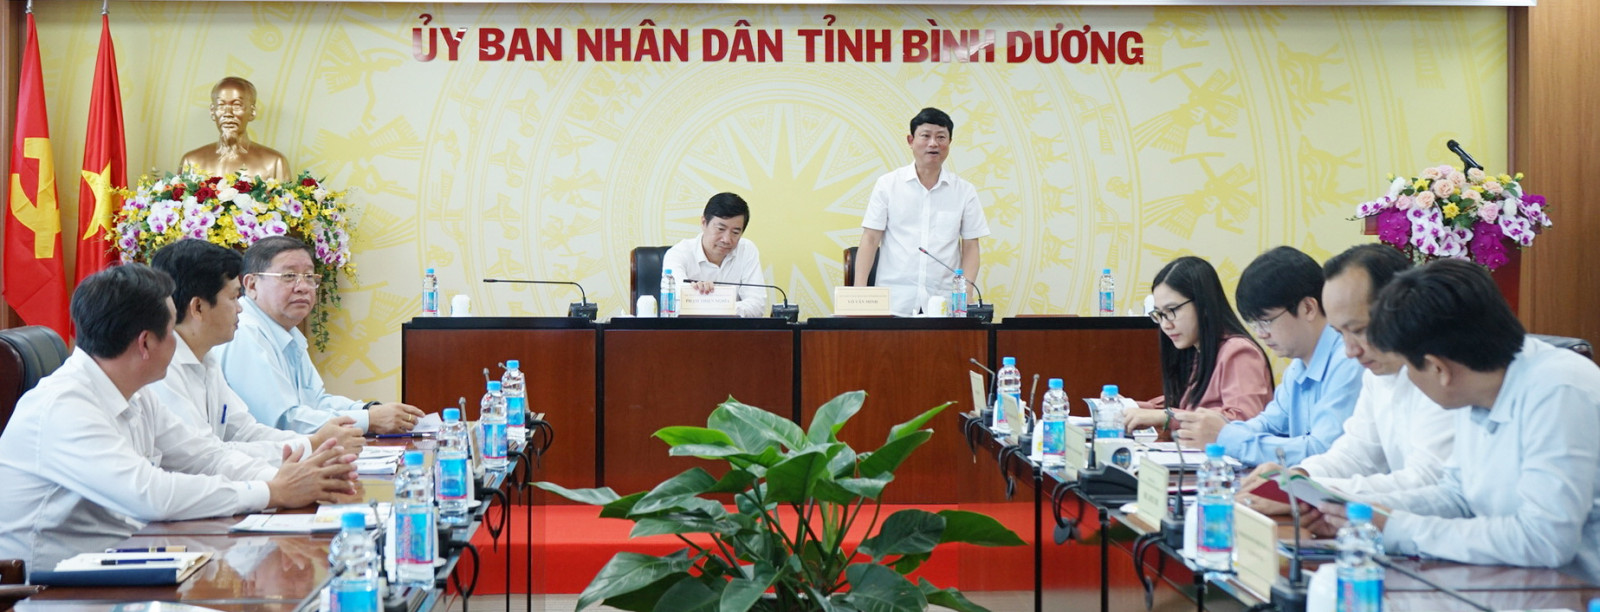 ng Võ Văn Minh, Phó Bí thư Tỉnh ủy, Chủ tịch UBND tỉnh Bình Dương tại buổi làm việc